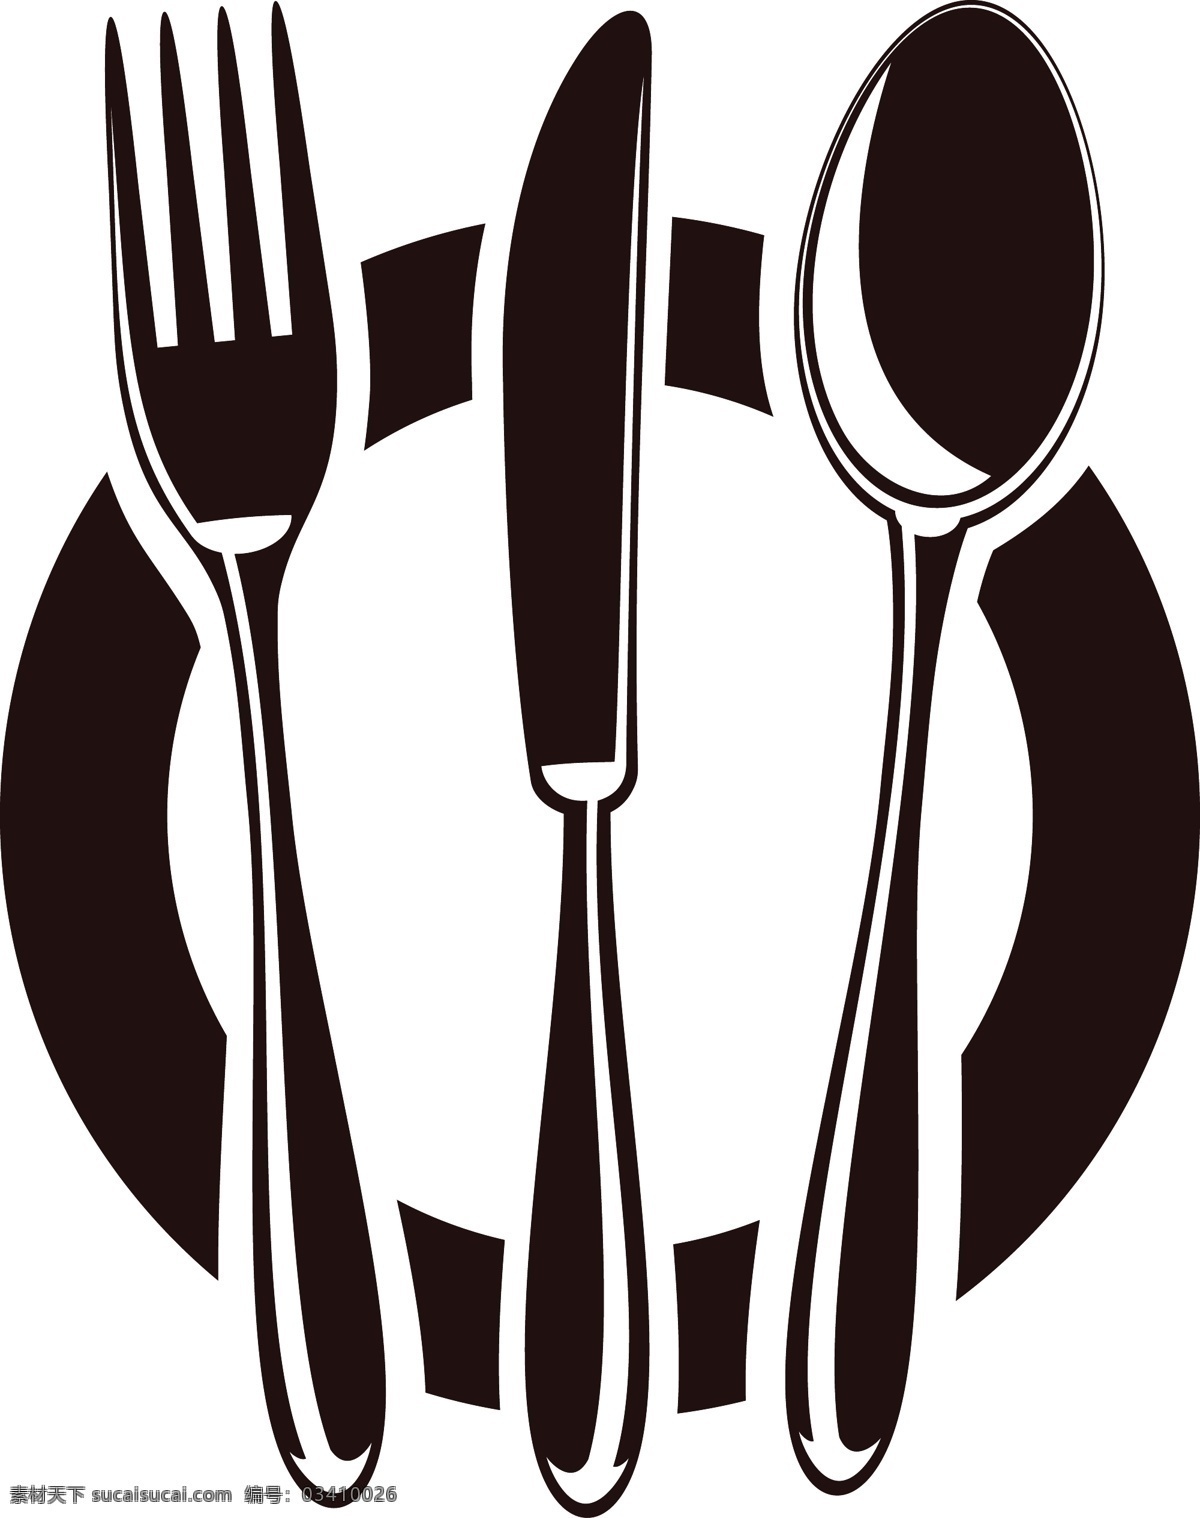 厨房用具 刀叉 西餐 宣传 图标 西餐刀具 盘子 不锈钢餐具 叉子 刀 不锈钢刀叉 厨房产品 厨房 餐具 厨房餐具